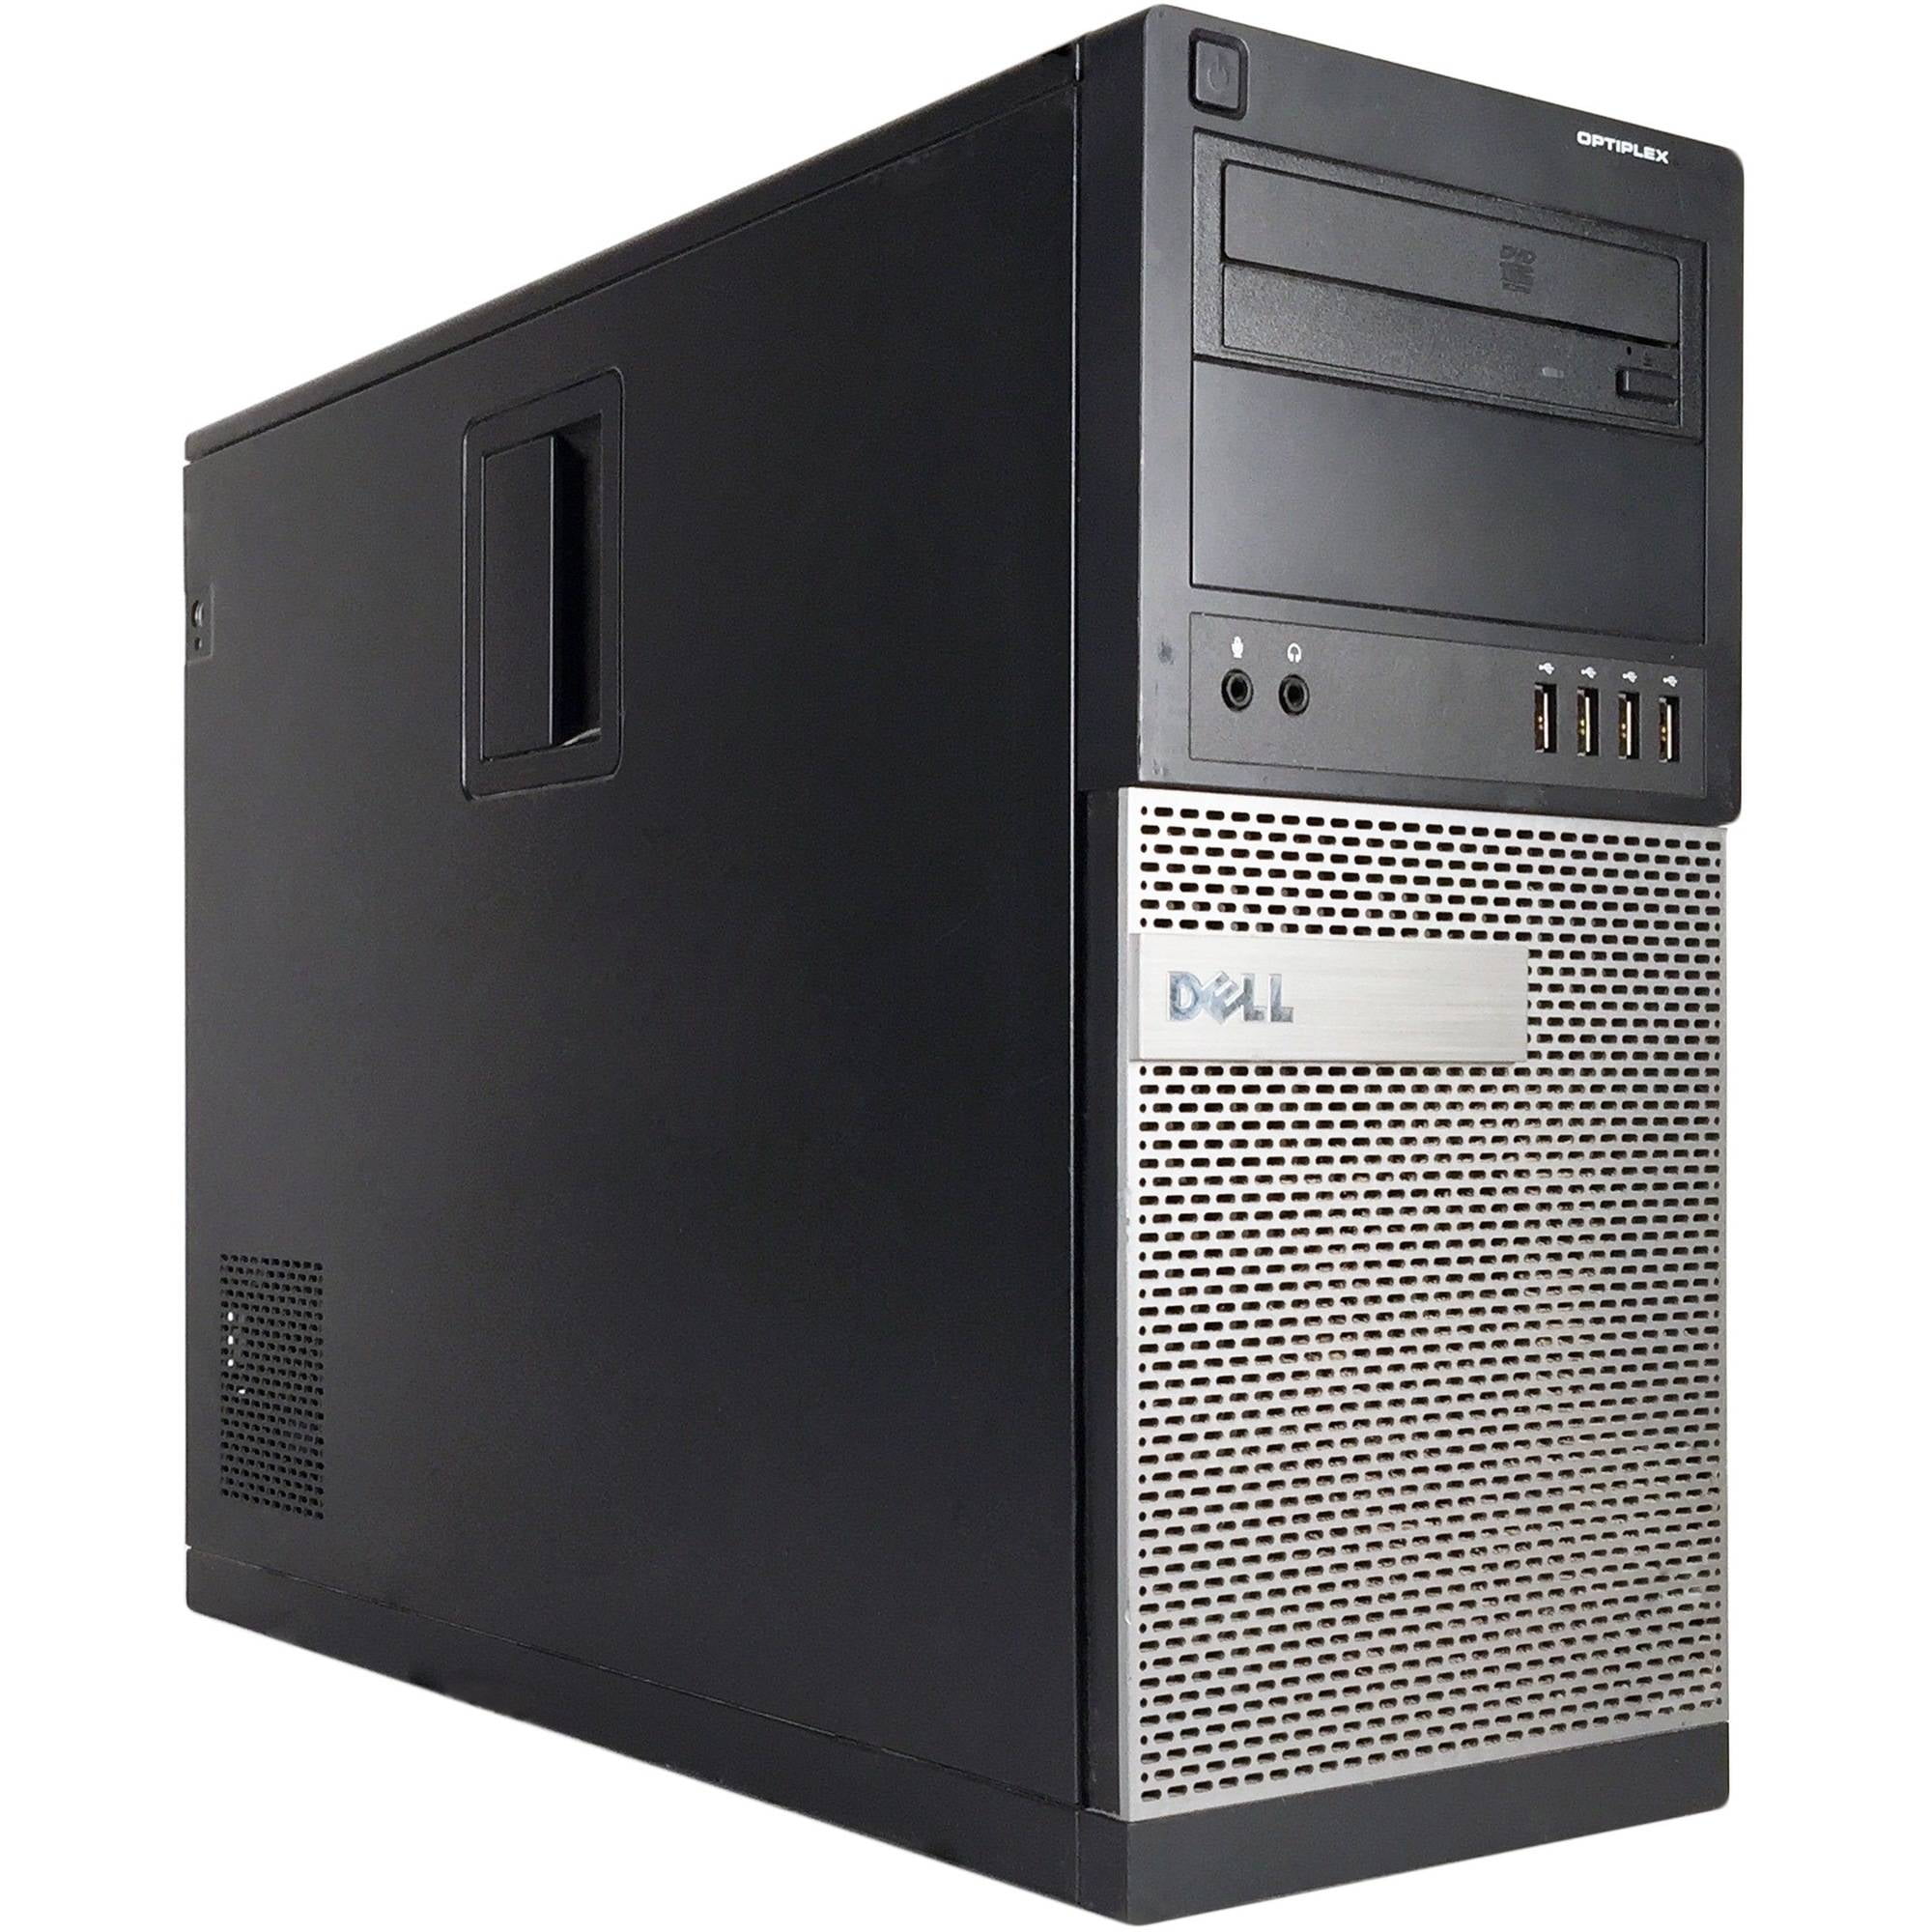 Dell Optiplex 960-320GB Hard Drive Windows 7 Professional 64 bit Loaded 